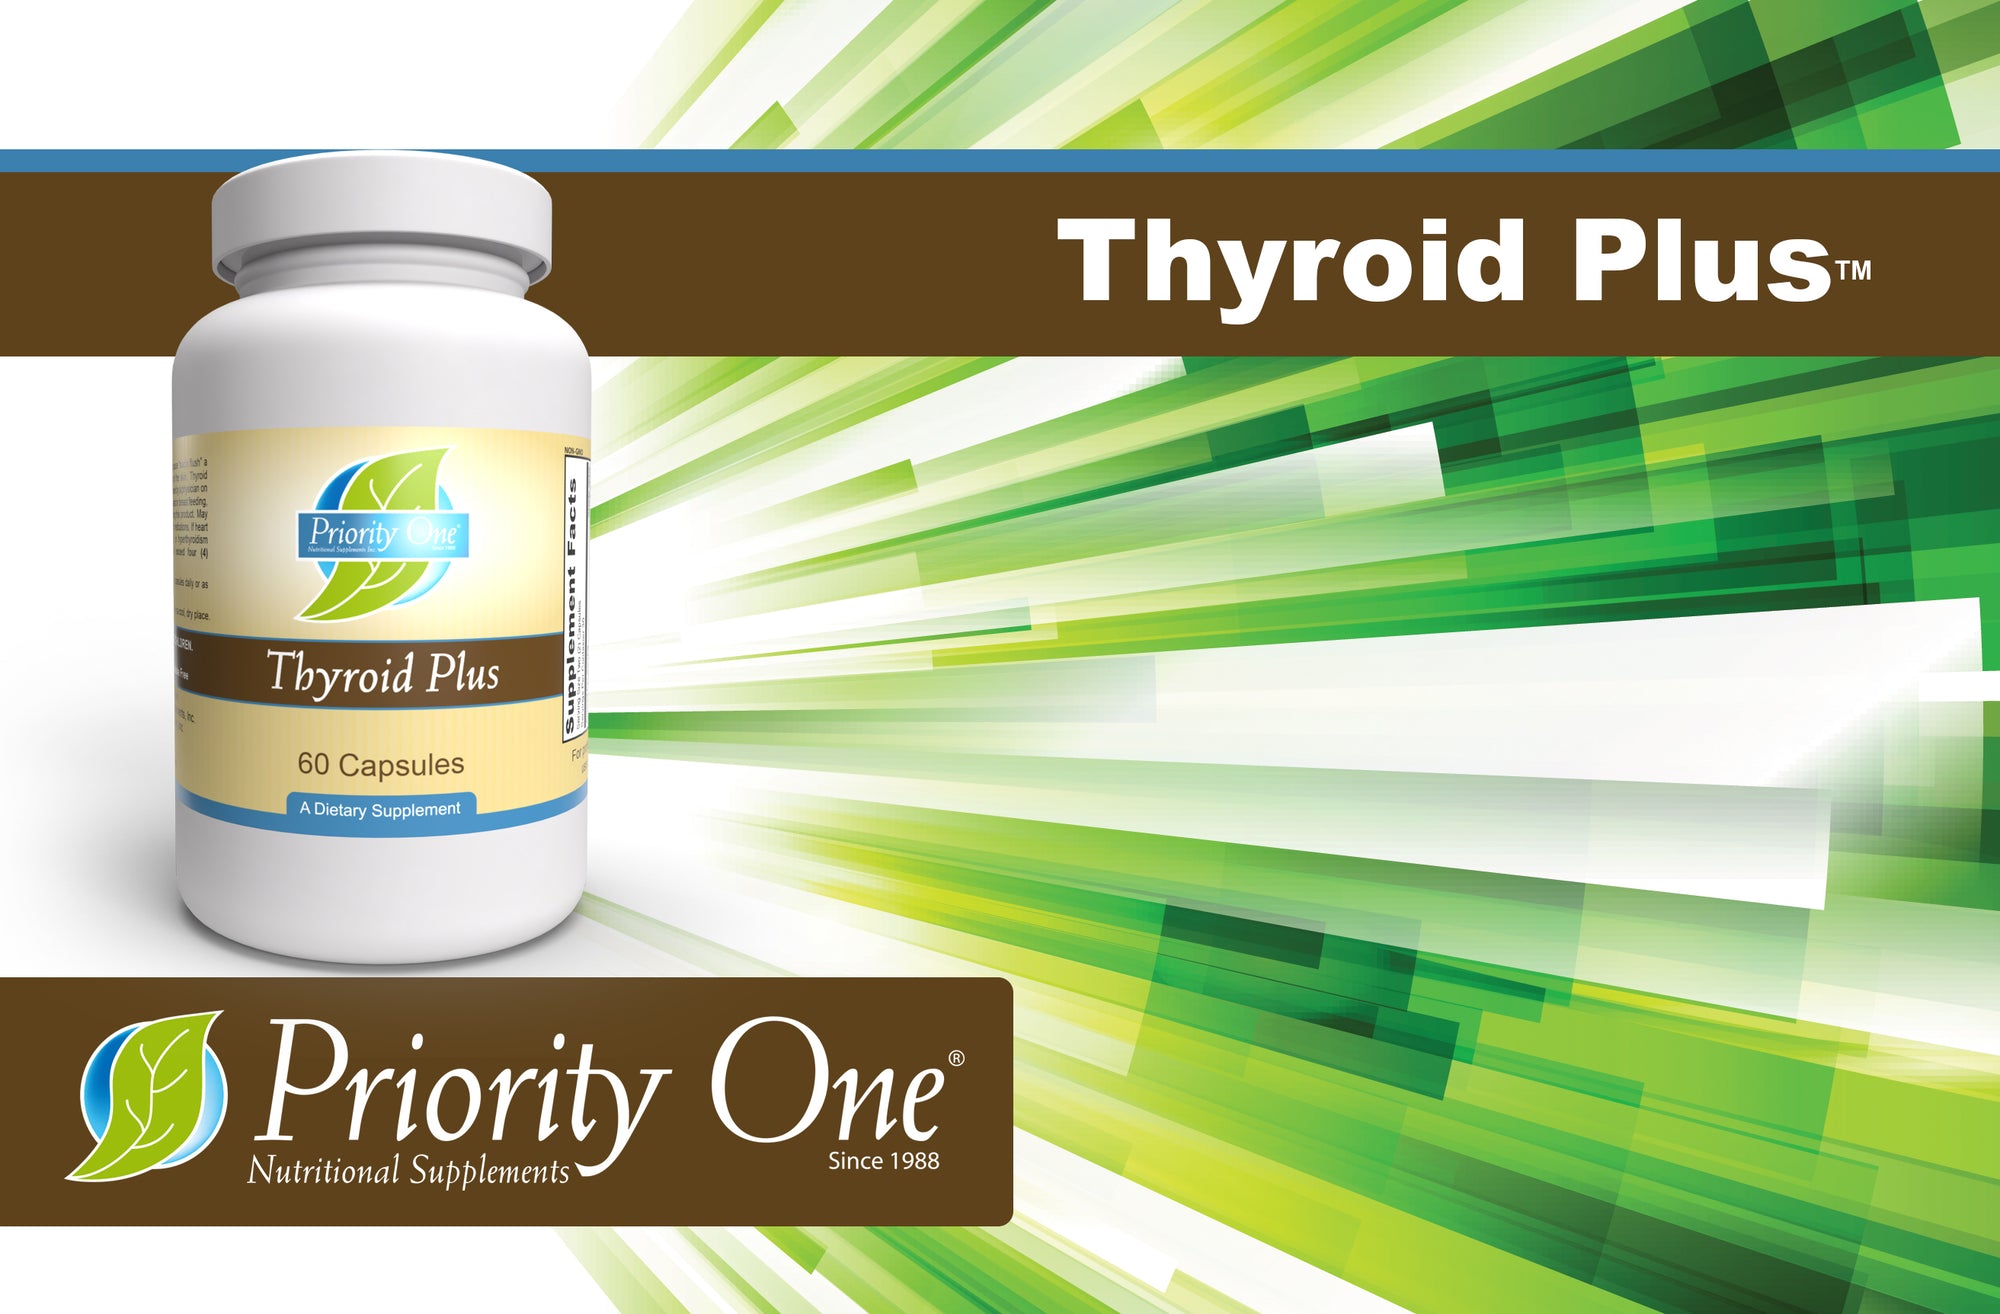 Thyroid Plus: proporciona nutrientes esenciales para una función tiroidea saludable.*